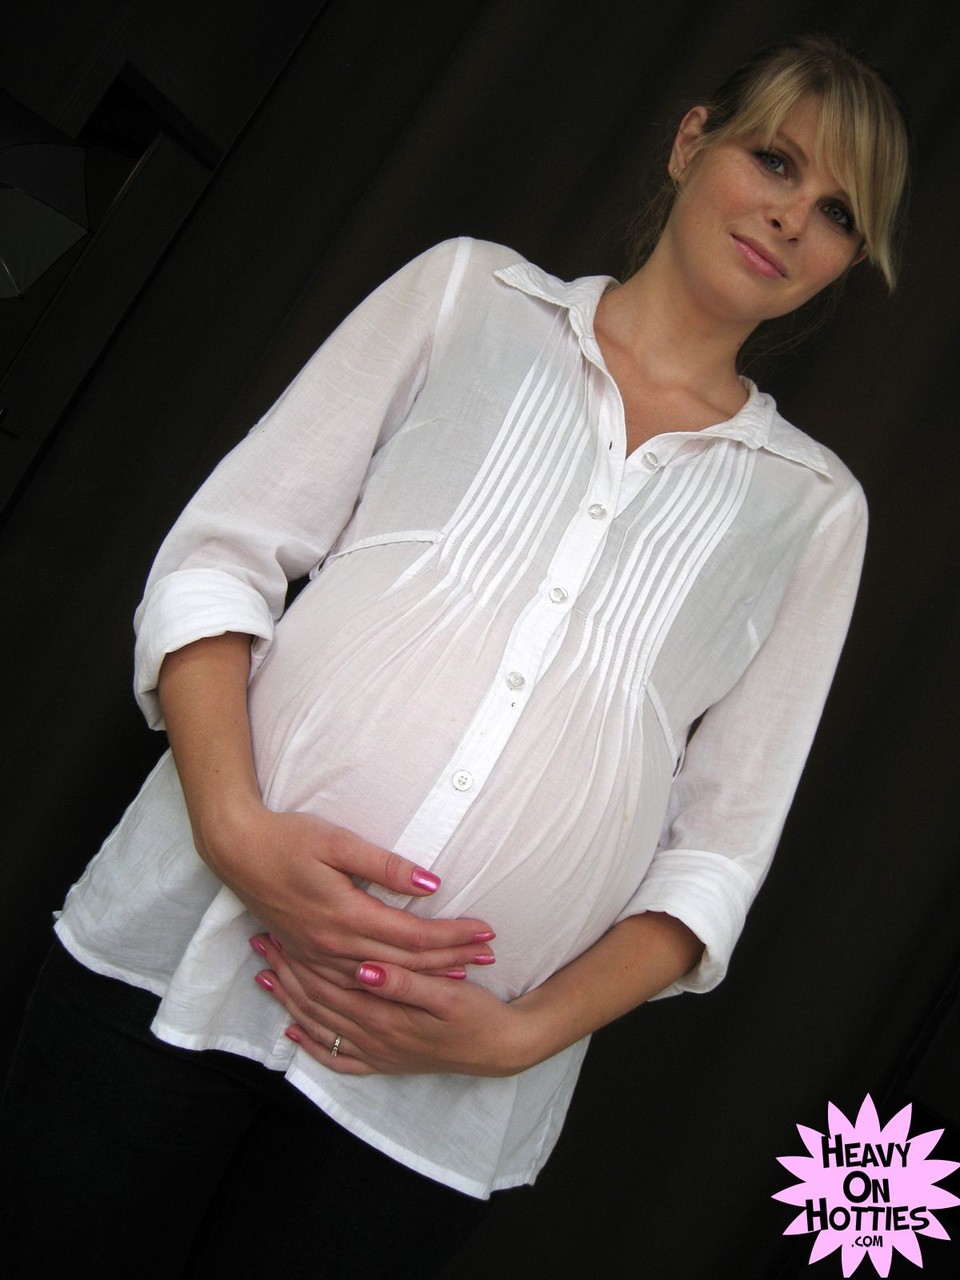 Sweet pregnant Ukrainian Wiska milks her big tits and gives a blowjob foto porno #428635789 | Heavy On Hotties Pics, Wiska, Pregnant, porno ponsel